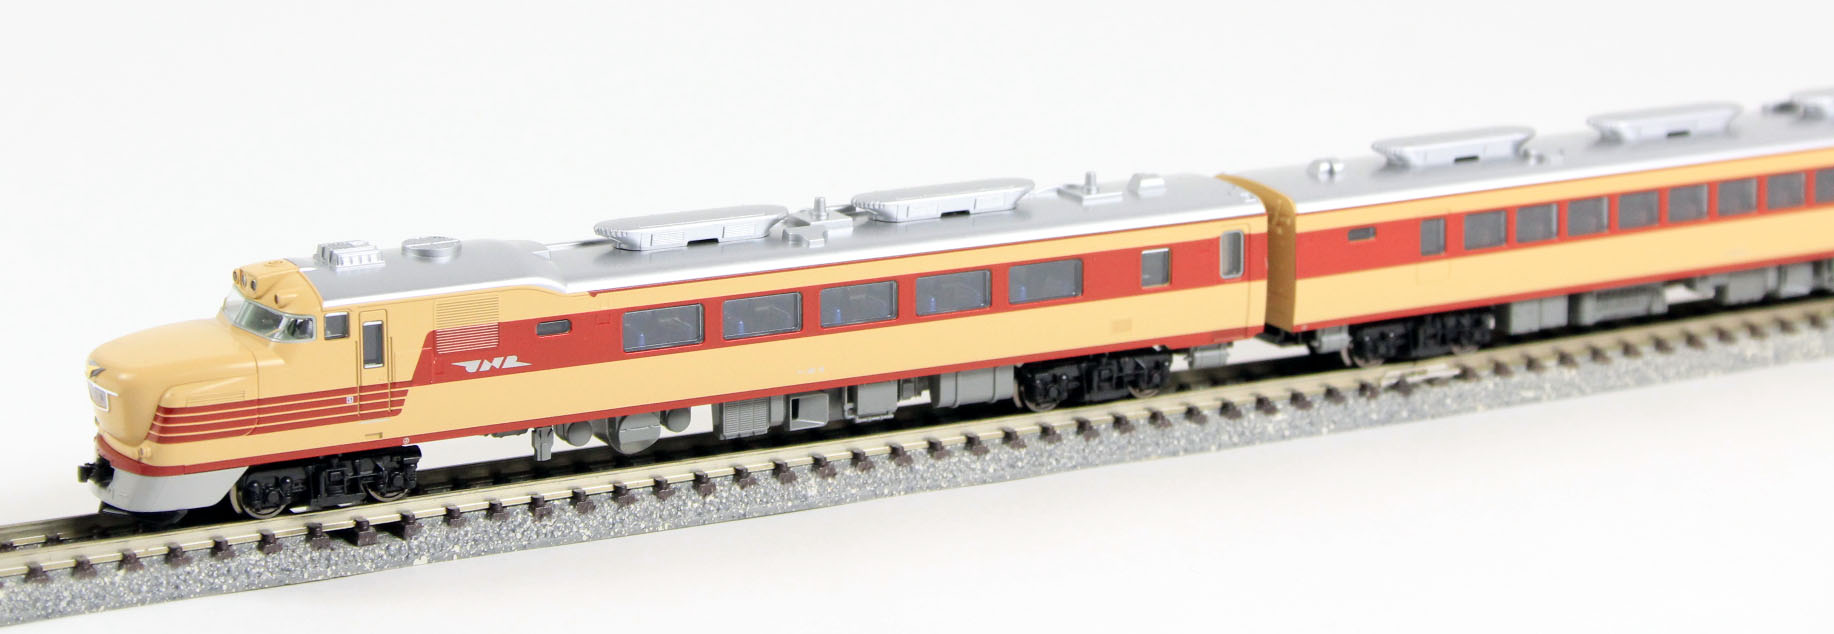 KATO 10-1497 キハ81系 「いなほ・つばさ」 7両基本セット 鉄道模型 N